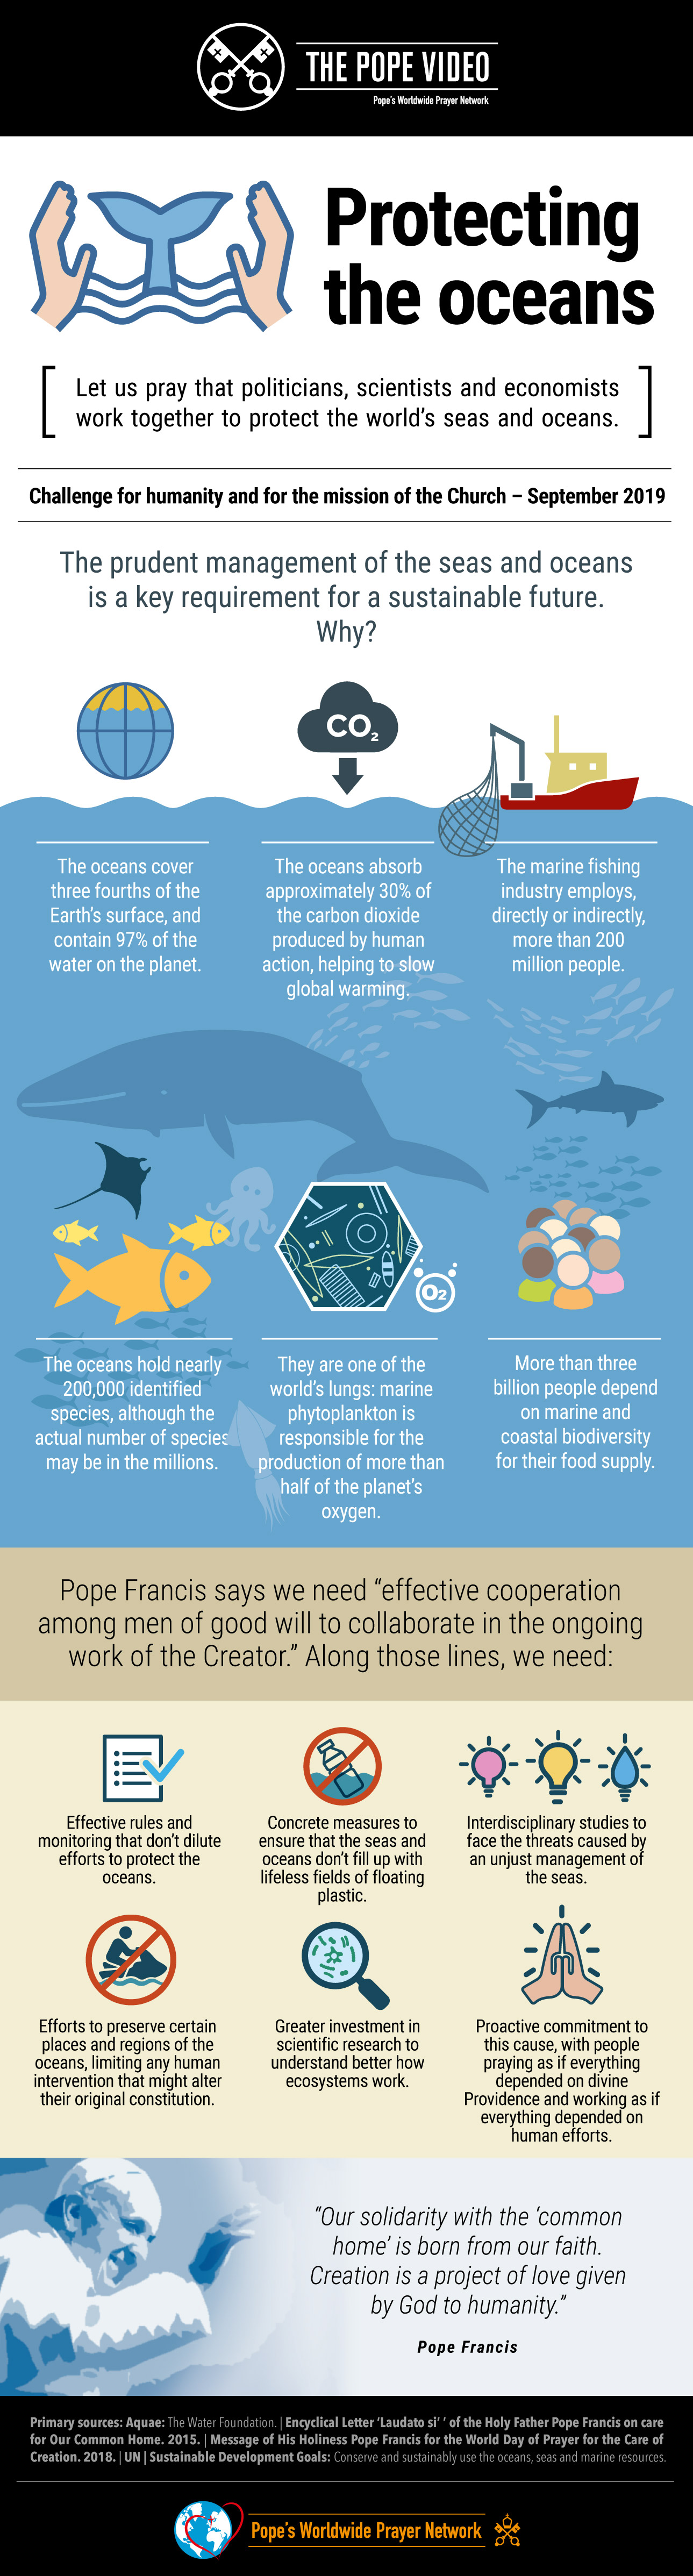 infographic-tpv-9-2019-1-en-protecting-the-oceans.jpg